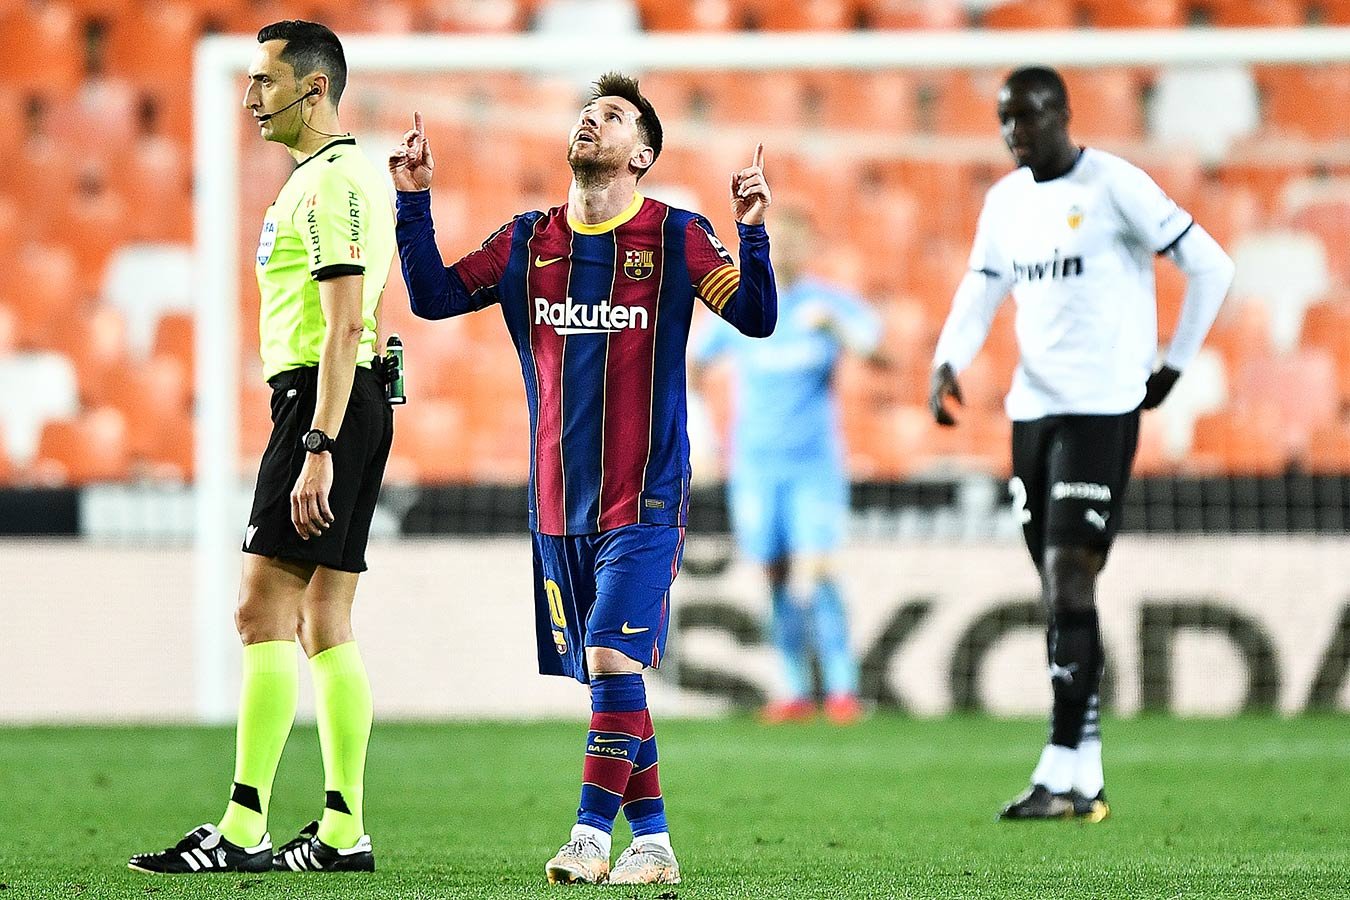 «Барселона» обыграла «Валенсию» благодаря дублю Месси. Черышев остался в запасе